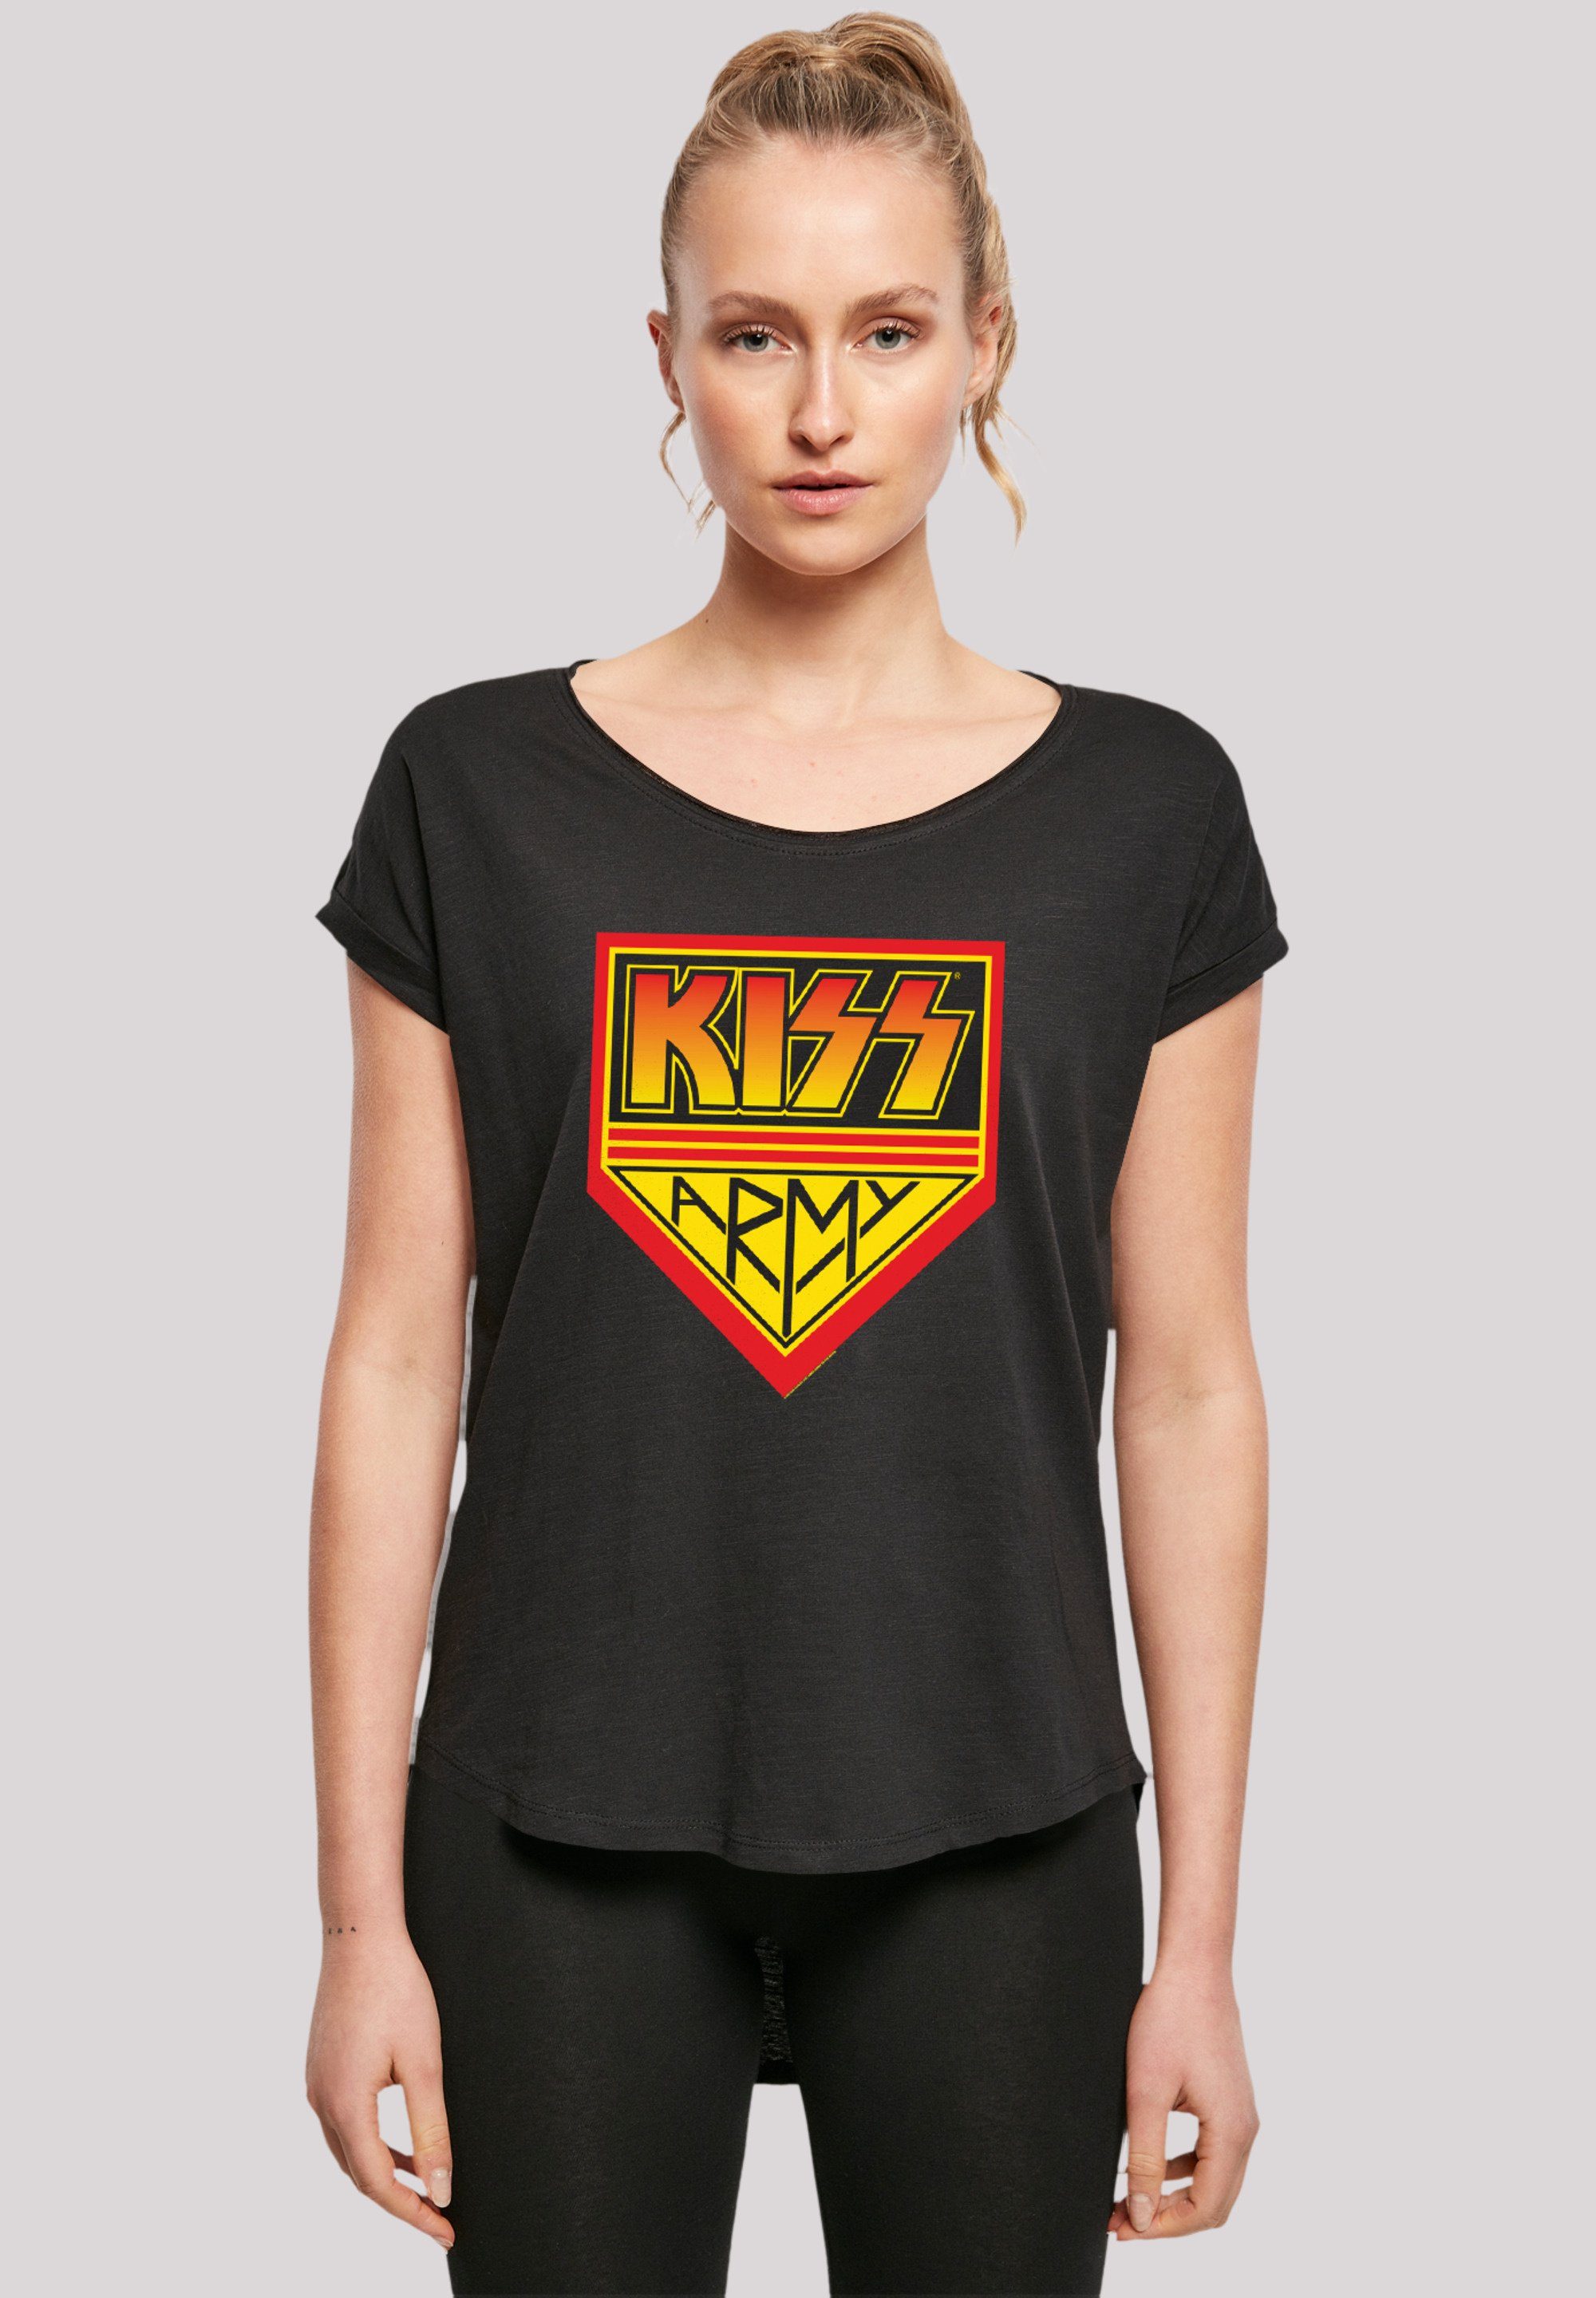 F4NT4STIC T-Shirt Rock lang Kiss Hinten By Logo Band Off, Army T-Shirt Premium Musik, Rock Damen extra geschnittenes Qualität